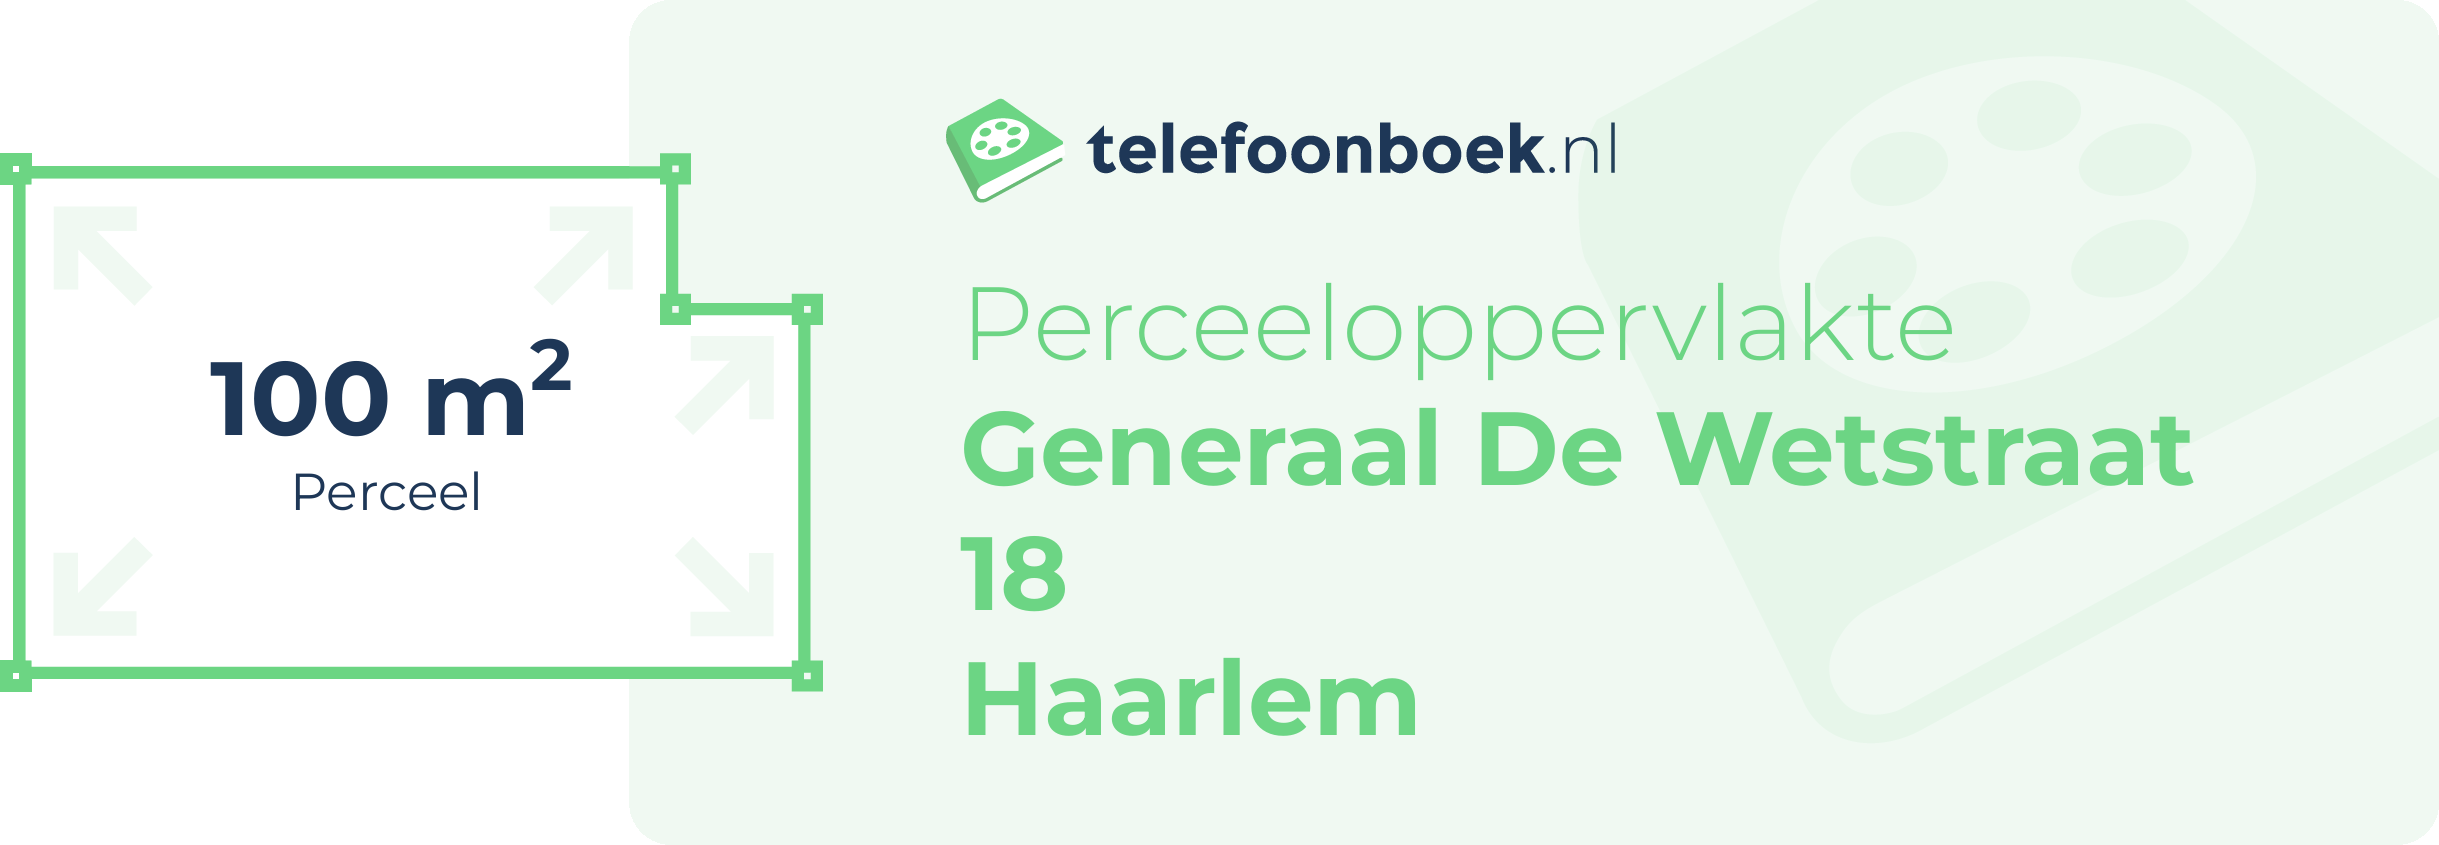 Perceeloppervlakte Generaal De Wetstraat 18 Haarlem